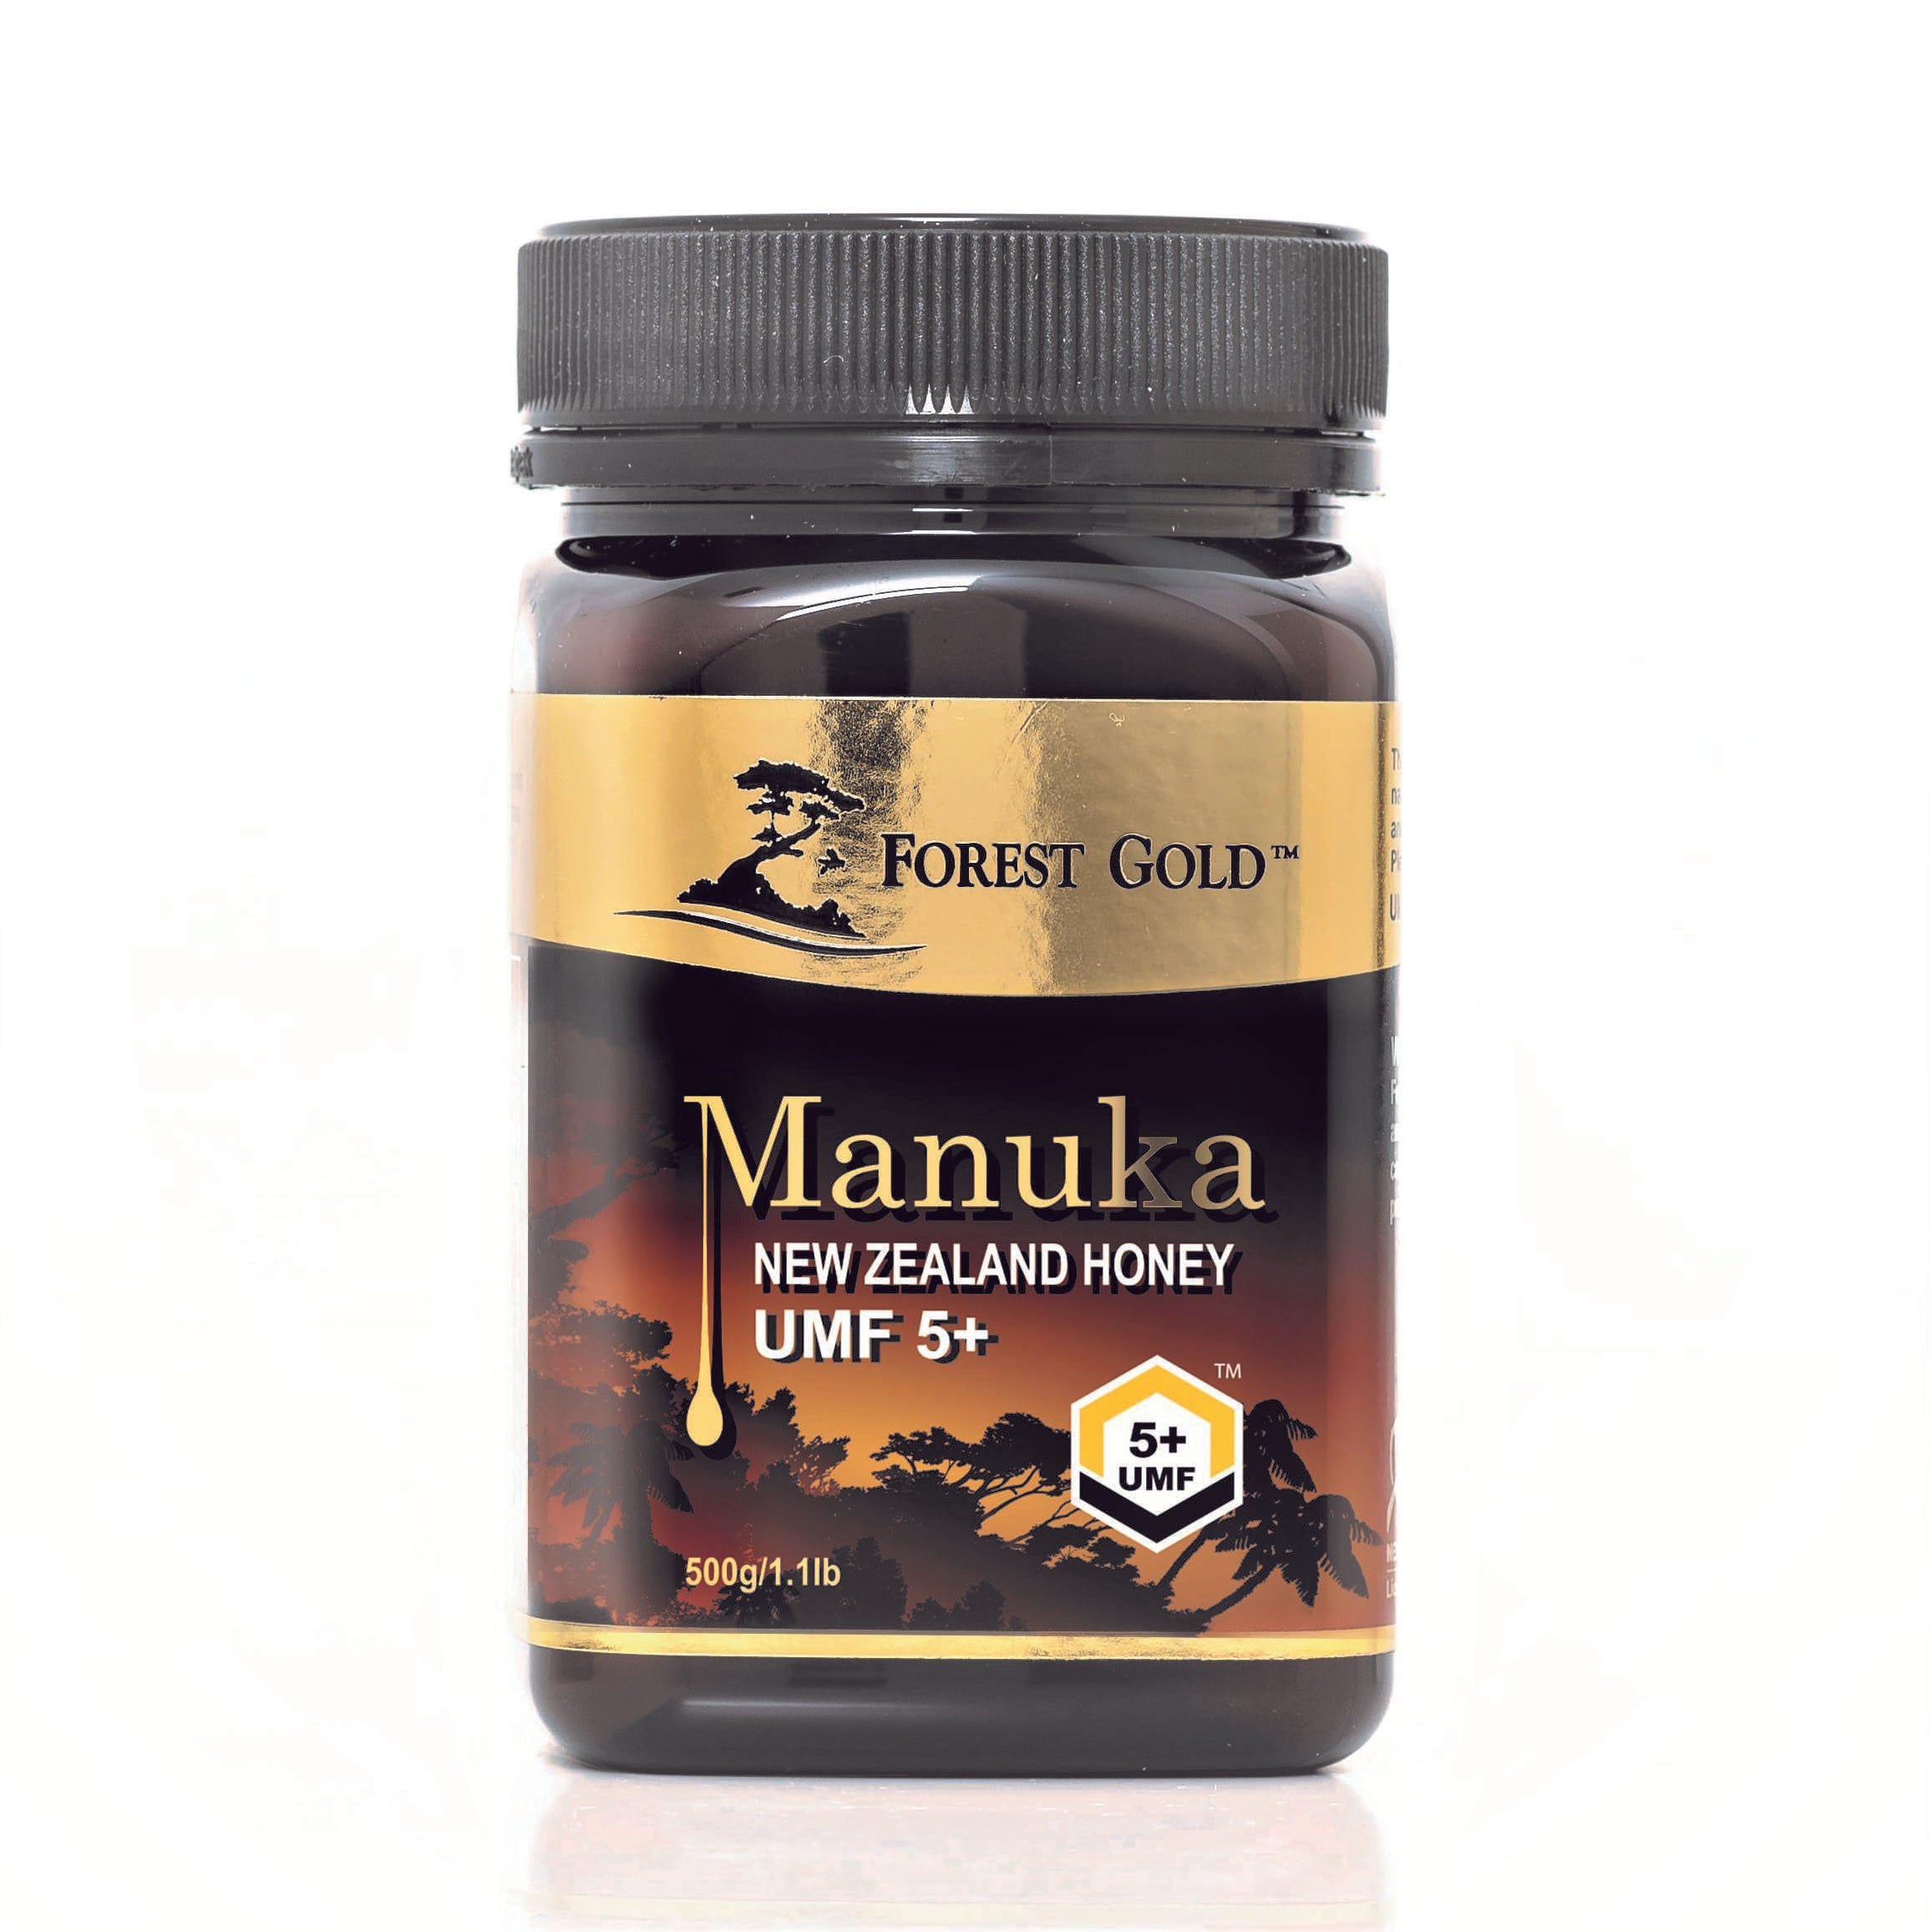 Forest Gold Manuka UMF 5+ Certified Honey-500g Manuka Honey Organichub   